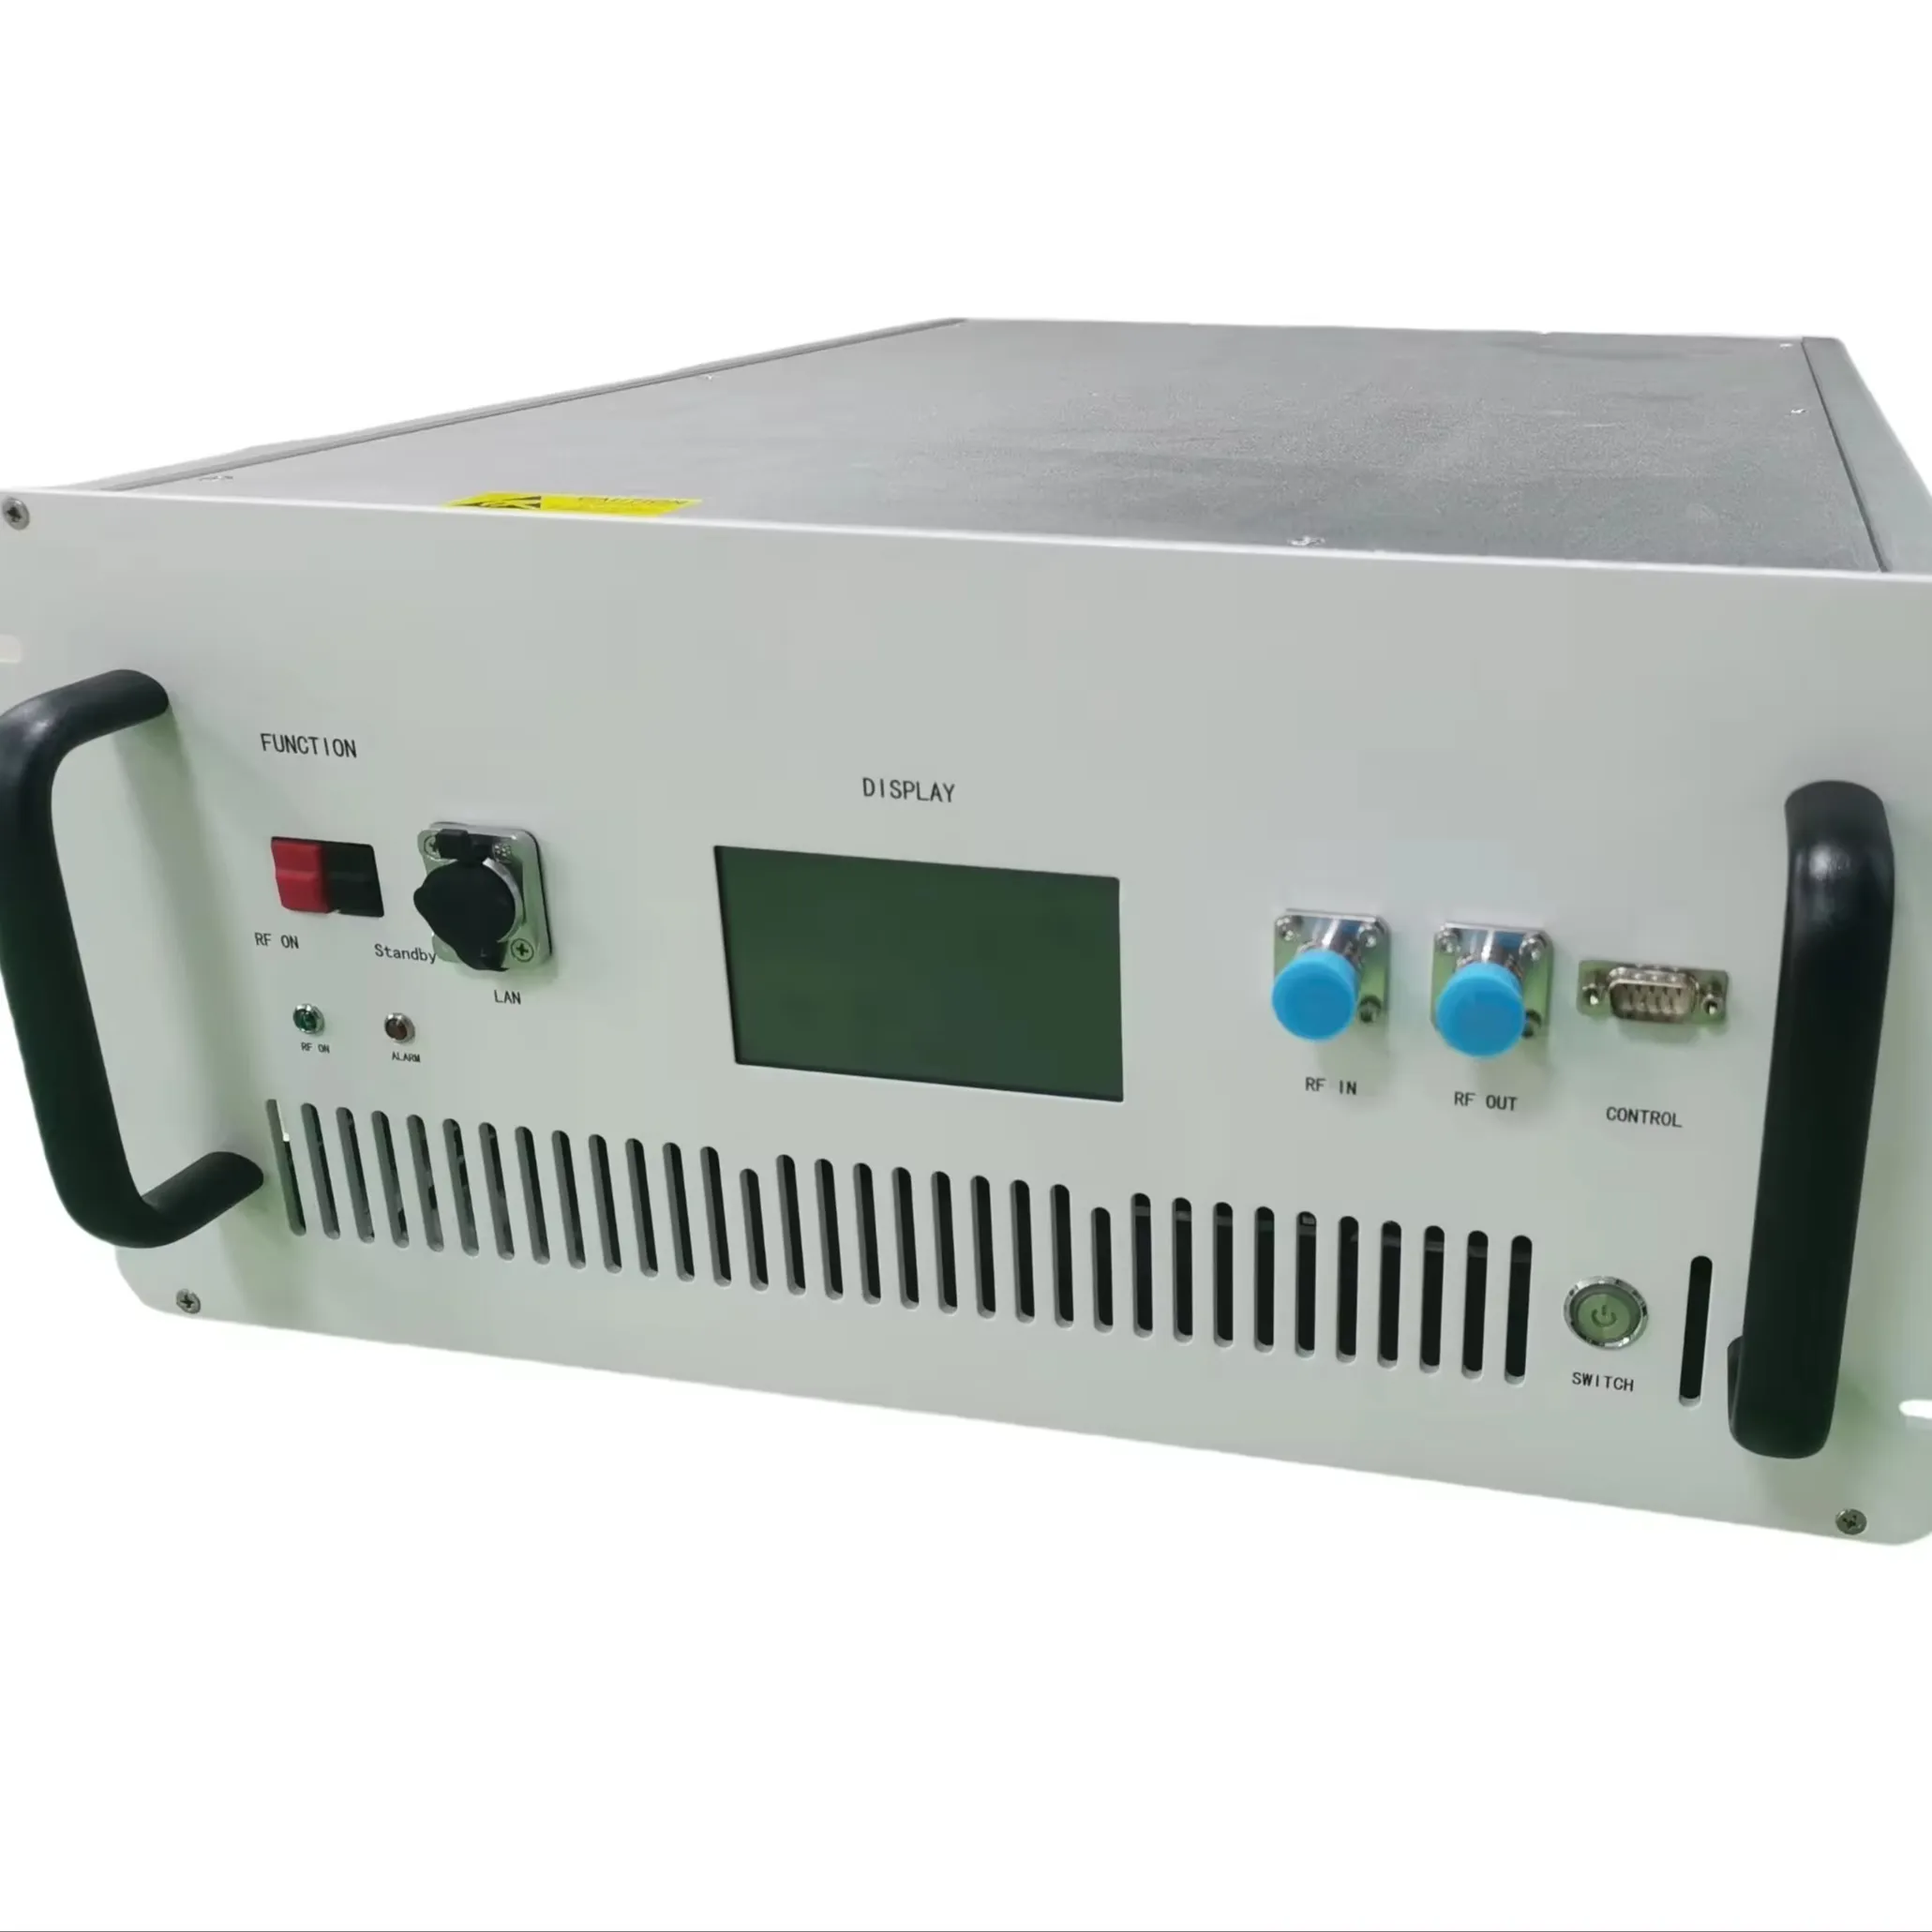 Gran oferta, caja amplificadora de RF de alta potencia de banda ultraancha de 1000-6000 MHz 40W para proporcionar amplificación de potencia en guerra electrónica